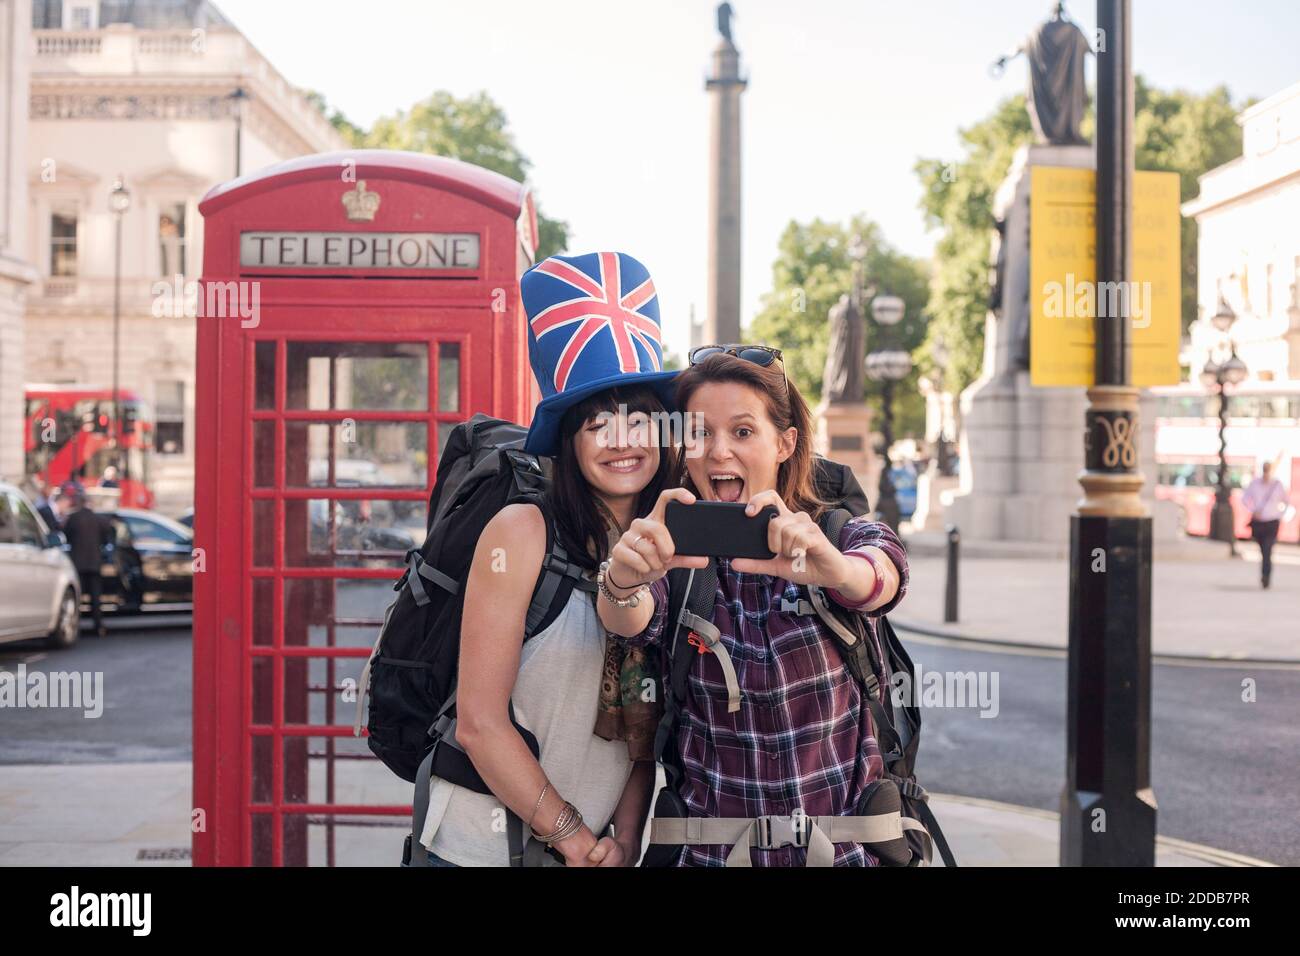 Une femme joyeuse prend un selfie avec un ami portant un chapeau drapeau britannique contre la boîte téléphonique rouge en ville Banque D'Images